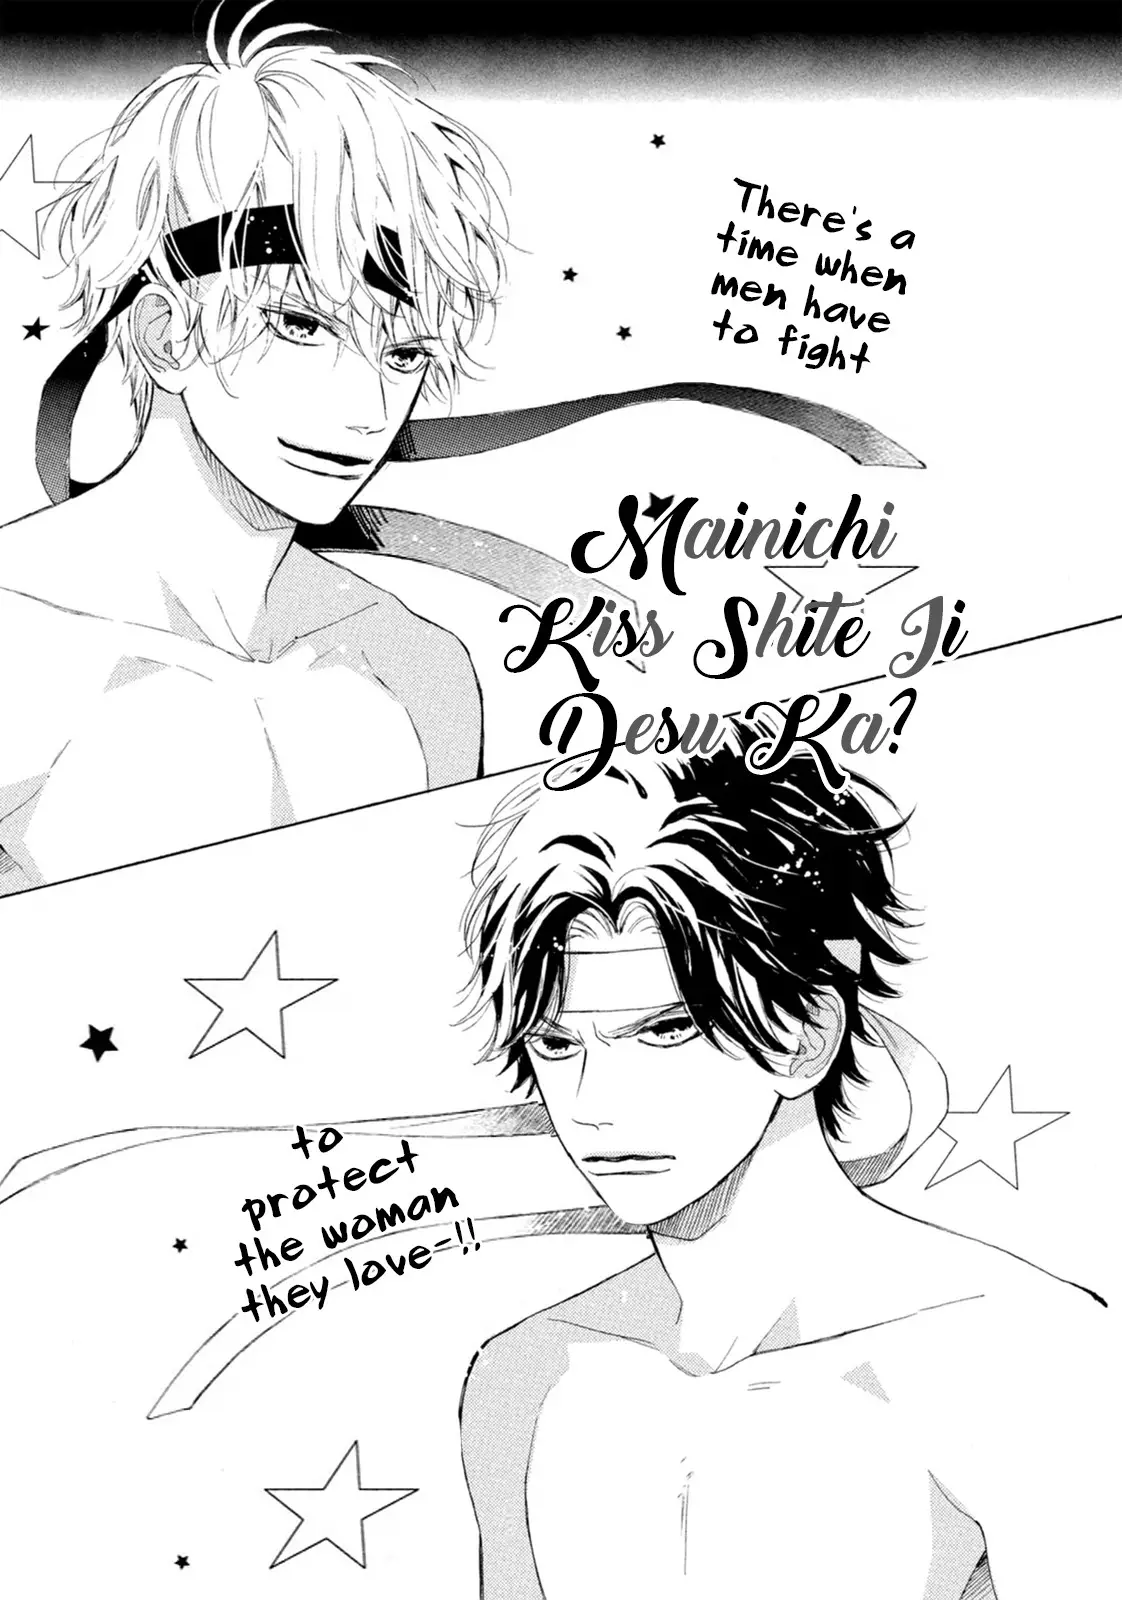 Mainichi Kiss Shite Ii Desu Ka? - 8 page 1-7ed83568